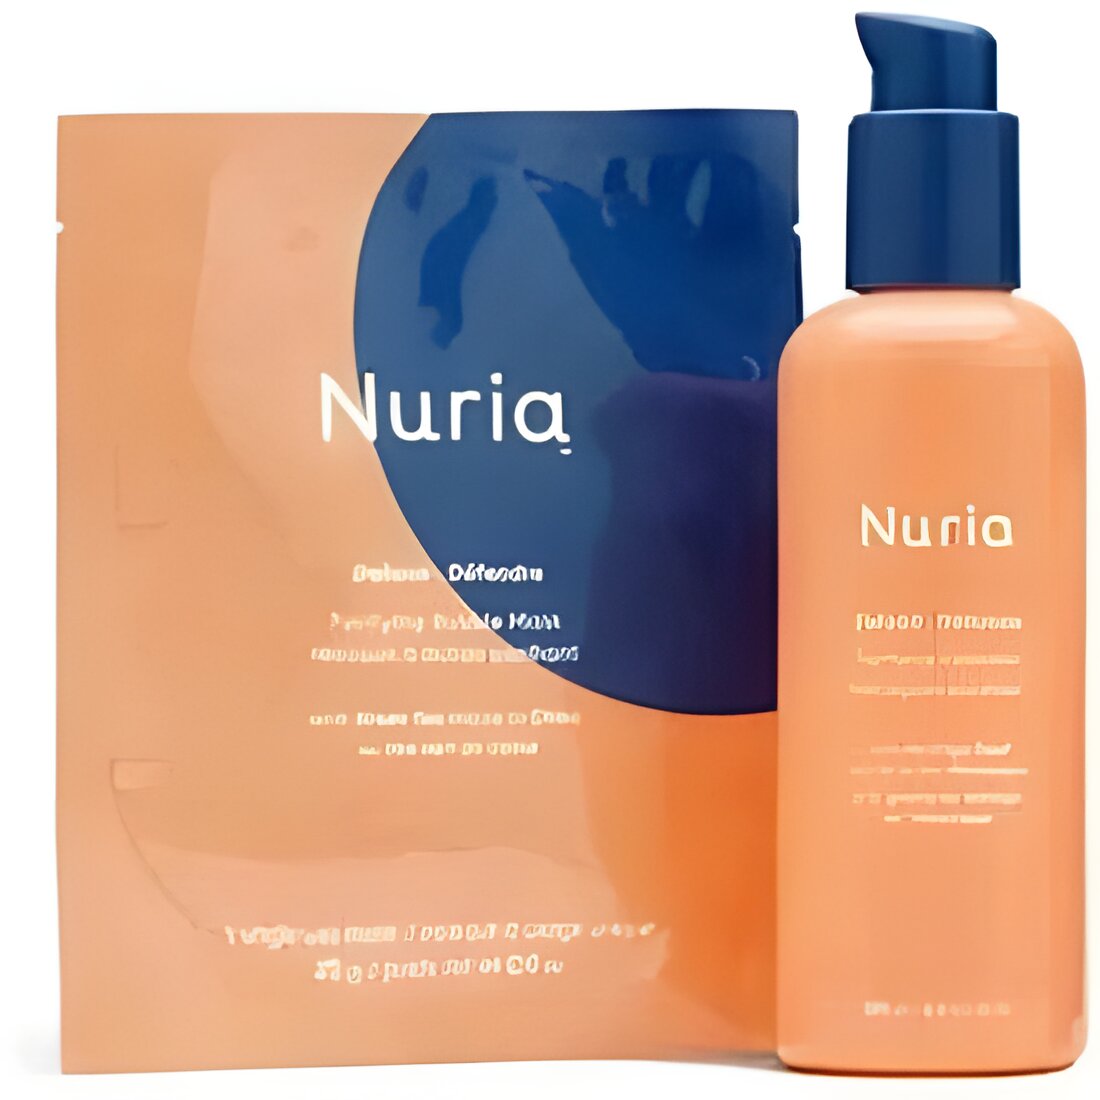 Free Nuria Beauty Skincare Mask